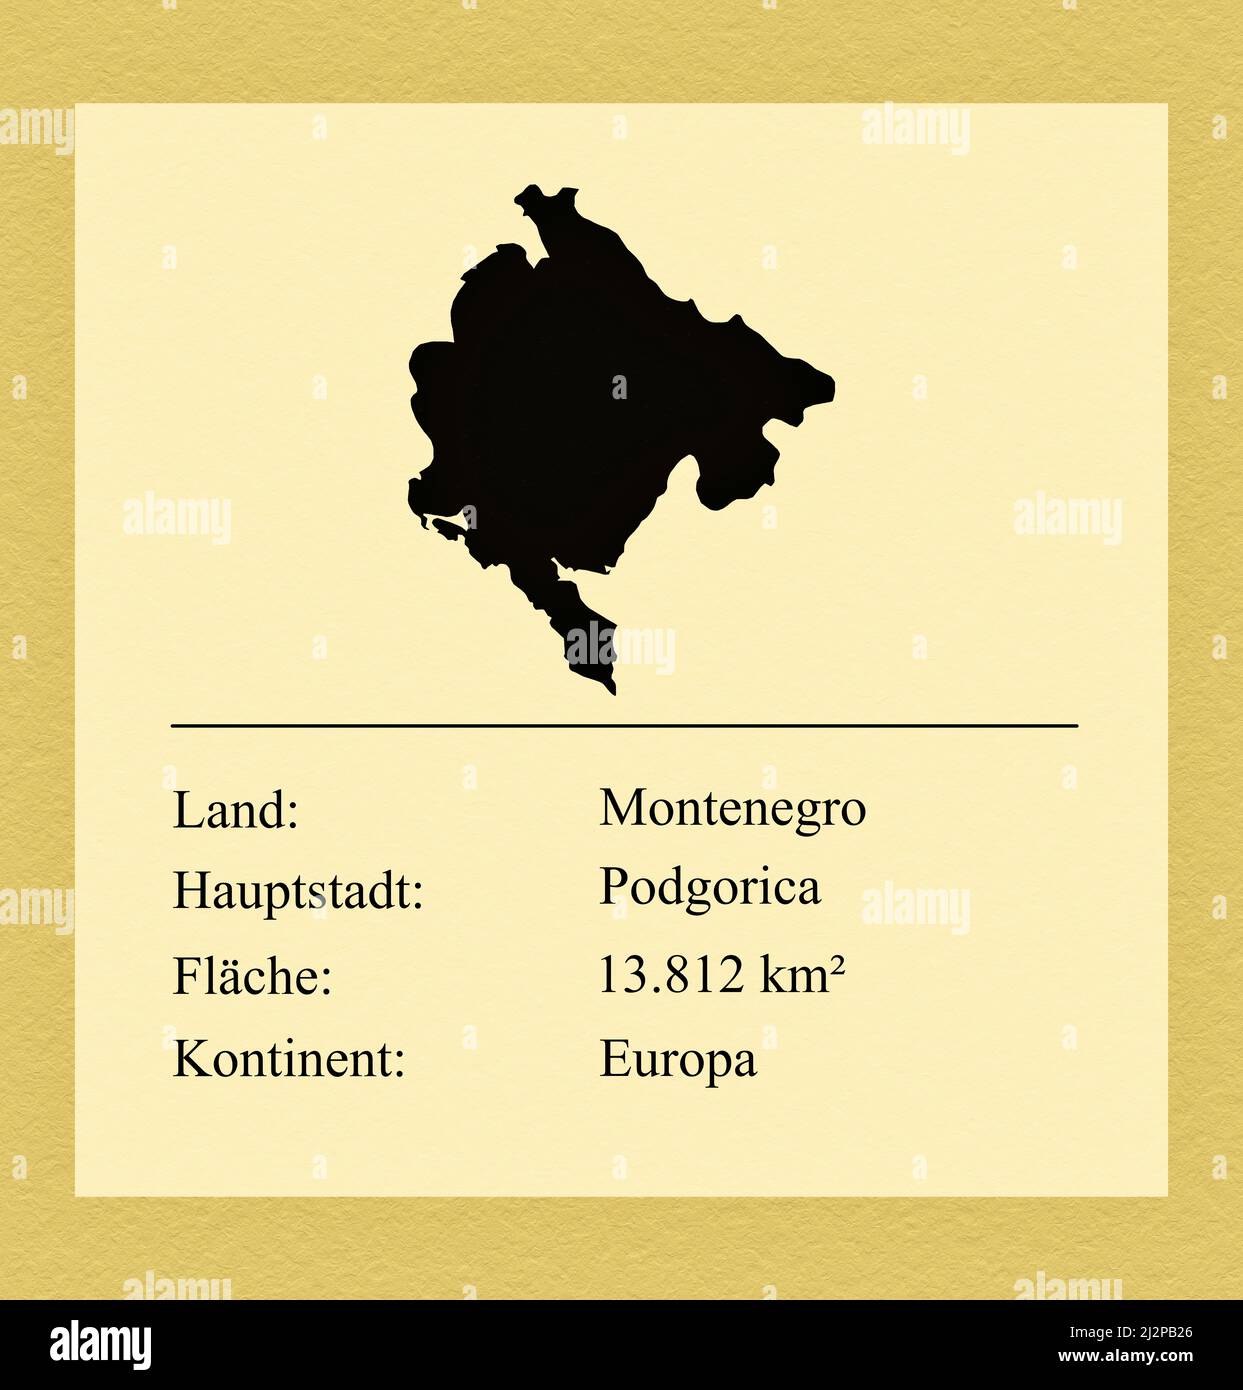 Umrisse des Landes Montenegro, darunter ein kleiner Steckbrief mit Ländernamen, Hauptstadt, Fläche und Kontinent Foto de stock